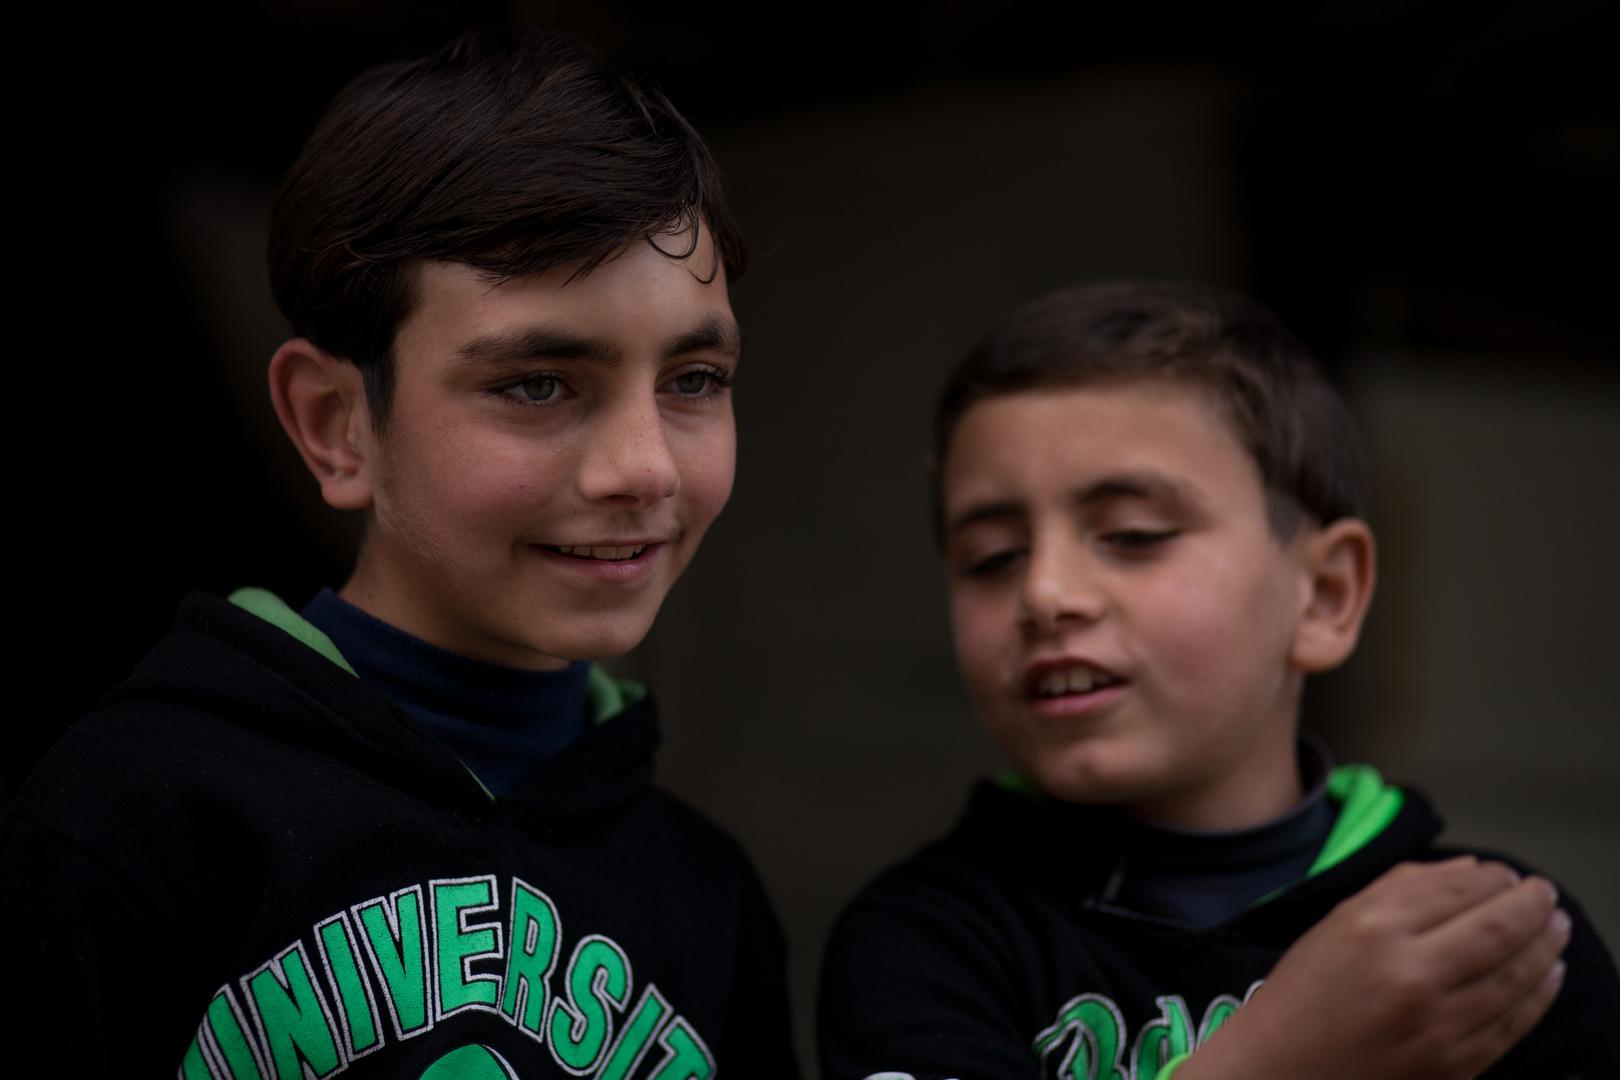 طفلا كوثر وائل (13 عاما) وفؤاد (7 أعوام) واجها صعوبات في الالتحاق بالمدرسة في لبنان.